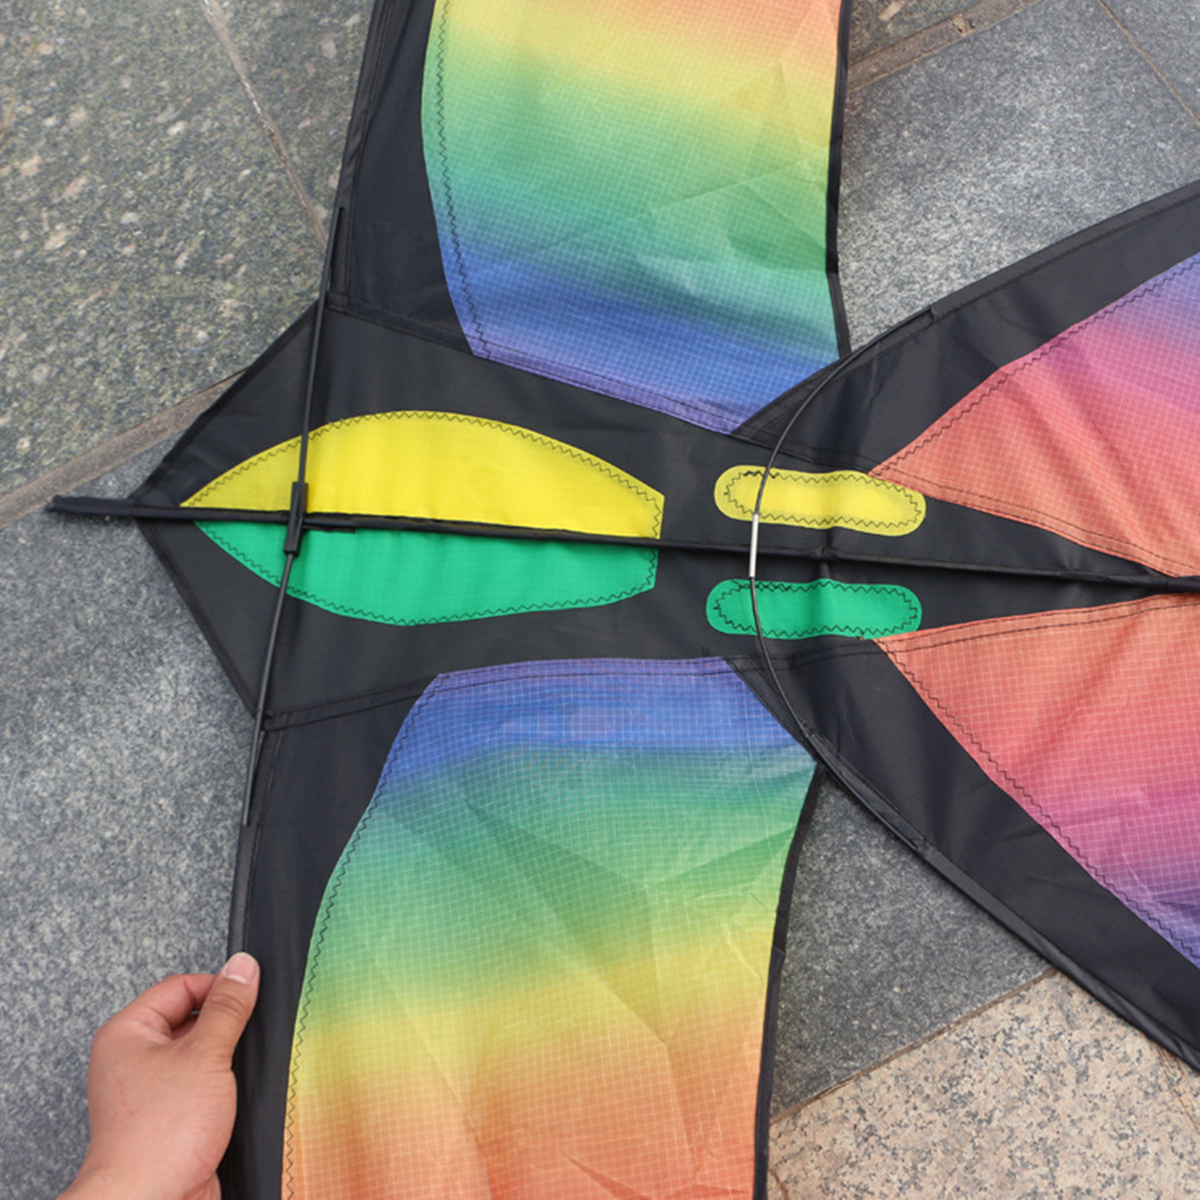 68in-Swallow-Kite-Bird-Kites-Single-Line-Outdoor-Fun-Sports-Toys-Delta-For-Kids-1130511-4